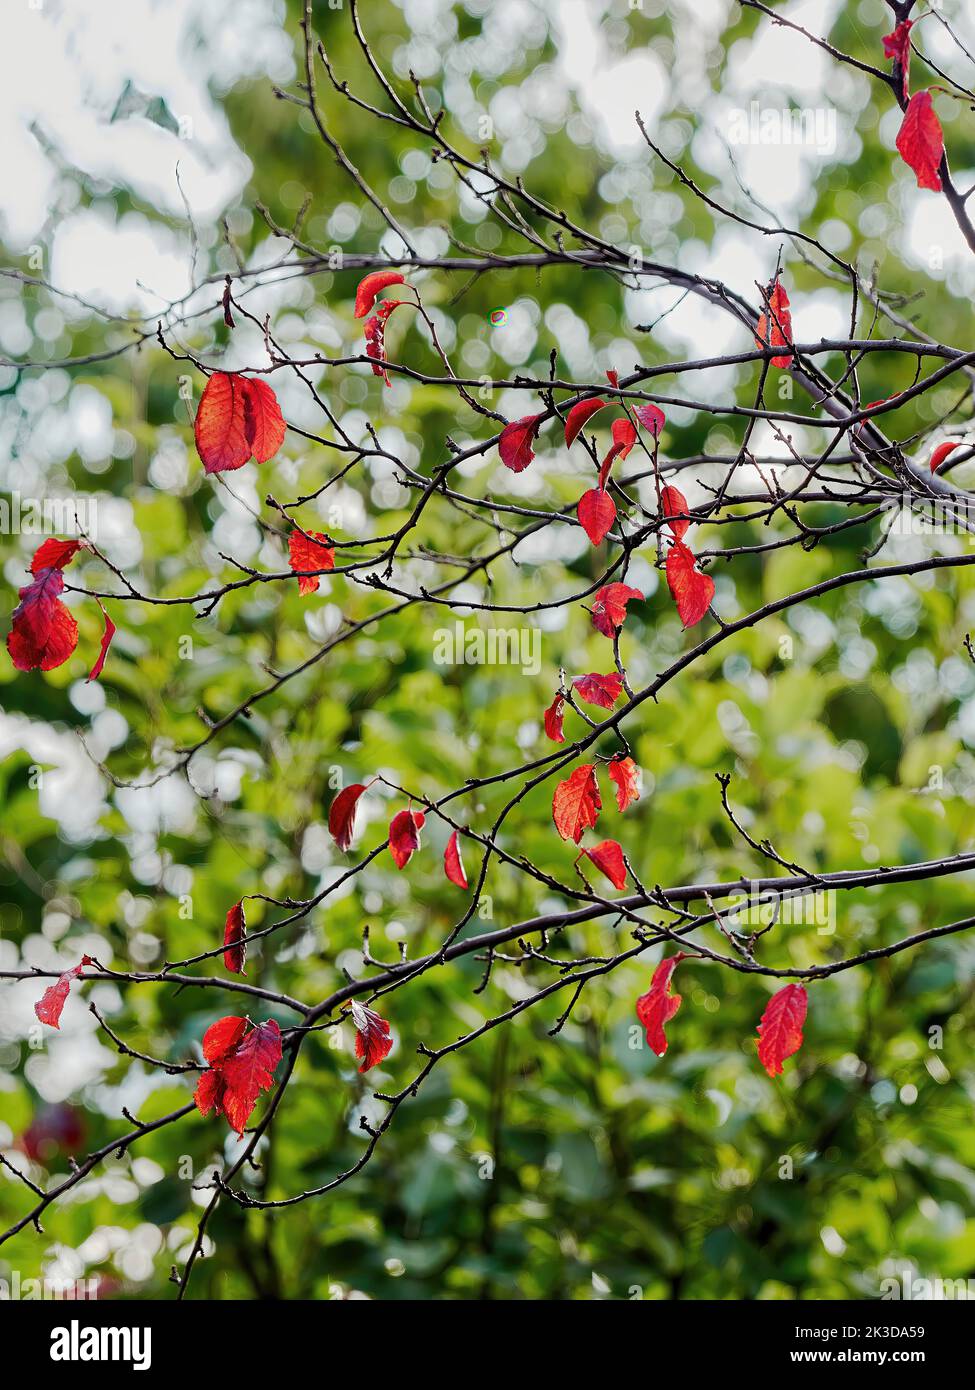 Gli ultimi fogli su un ciliegio, rosso autunnale brillante e traslucido alla luce del sole, su uno sfondo sfocato del verde di un altro albero. Foto Stock